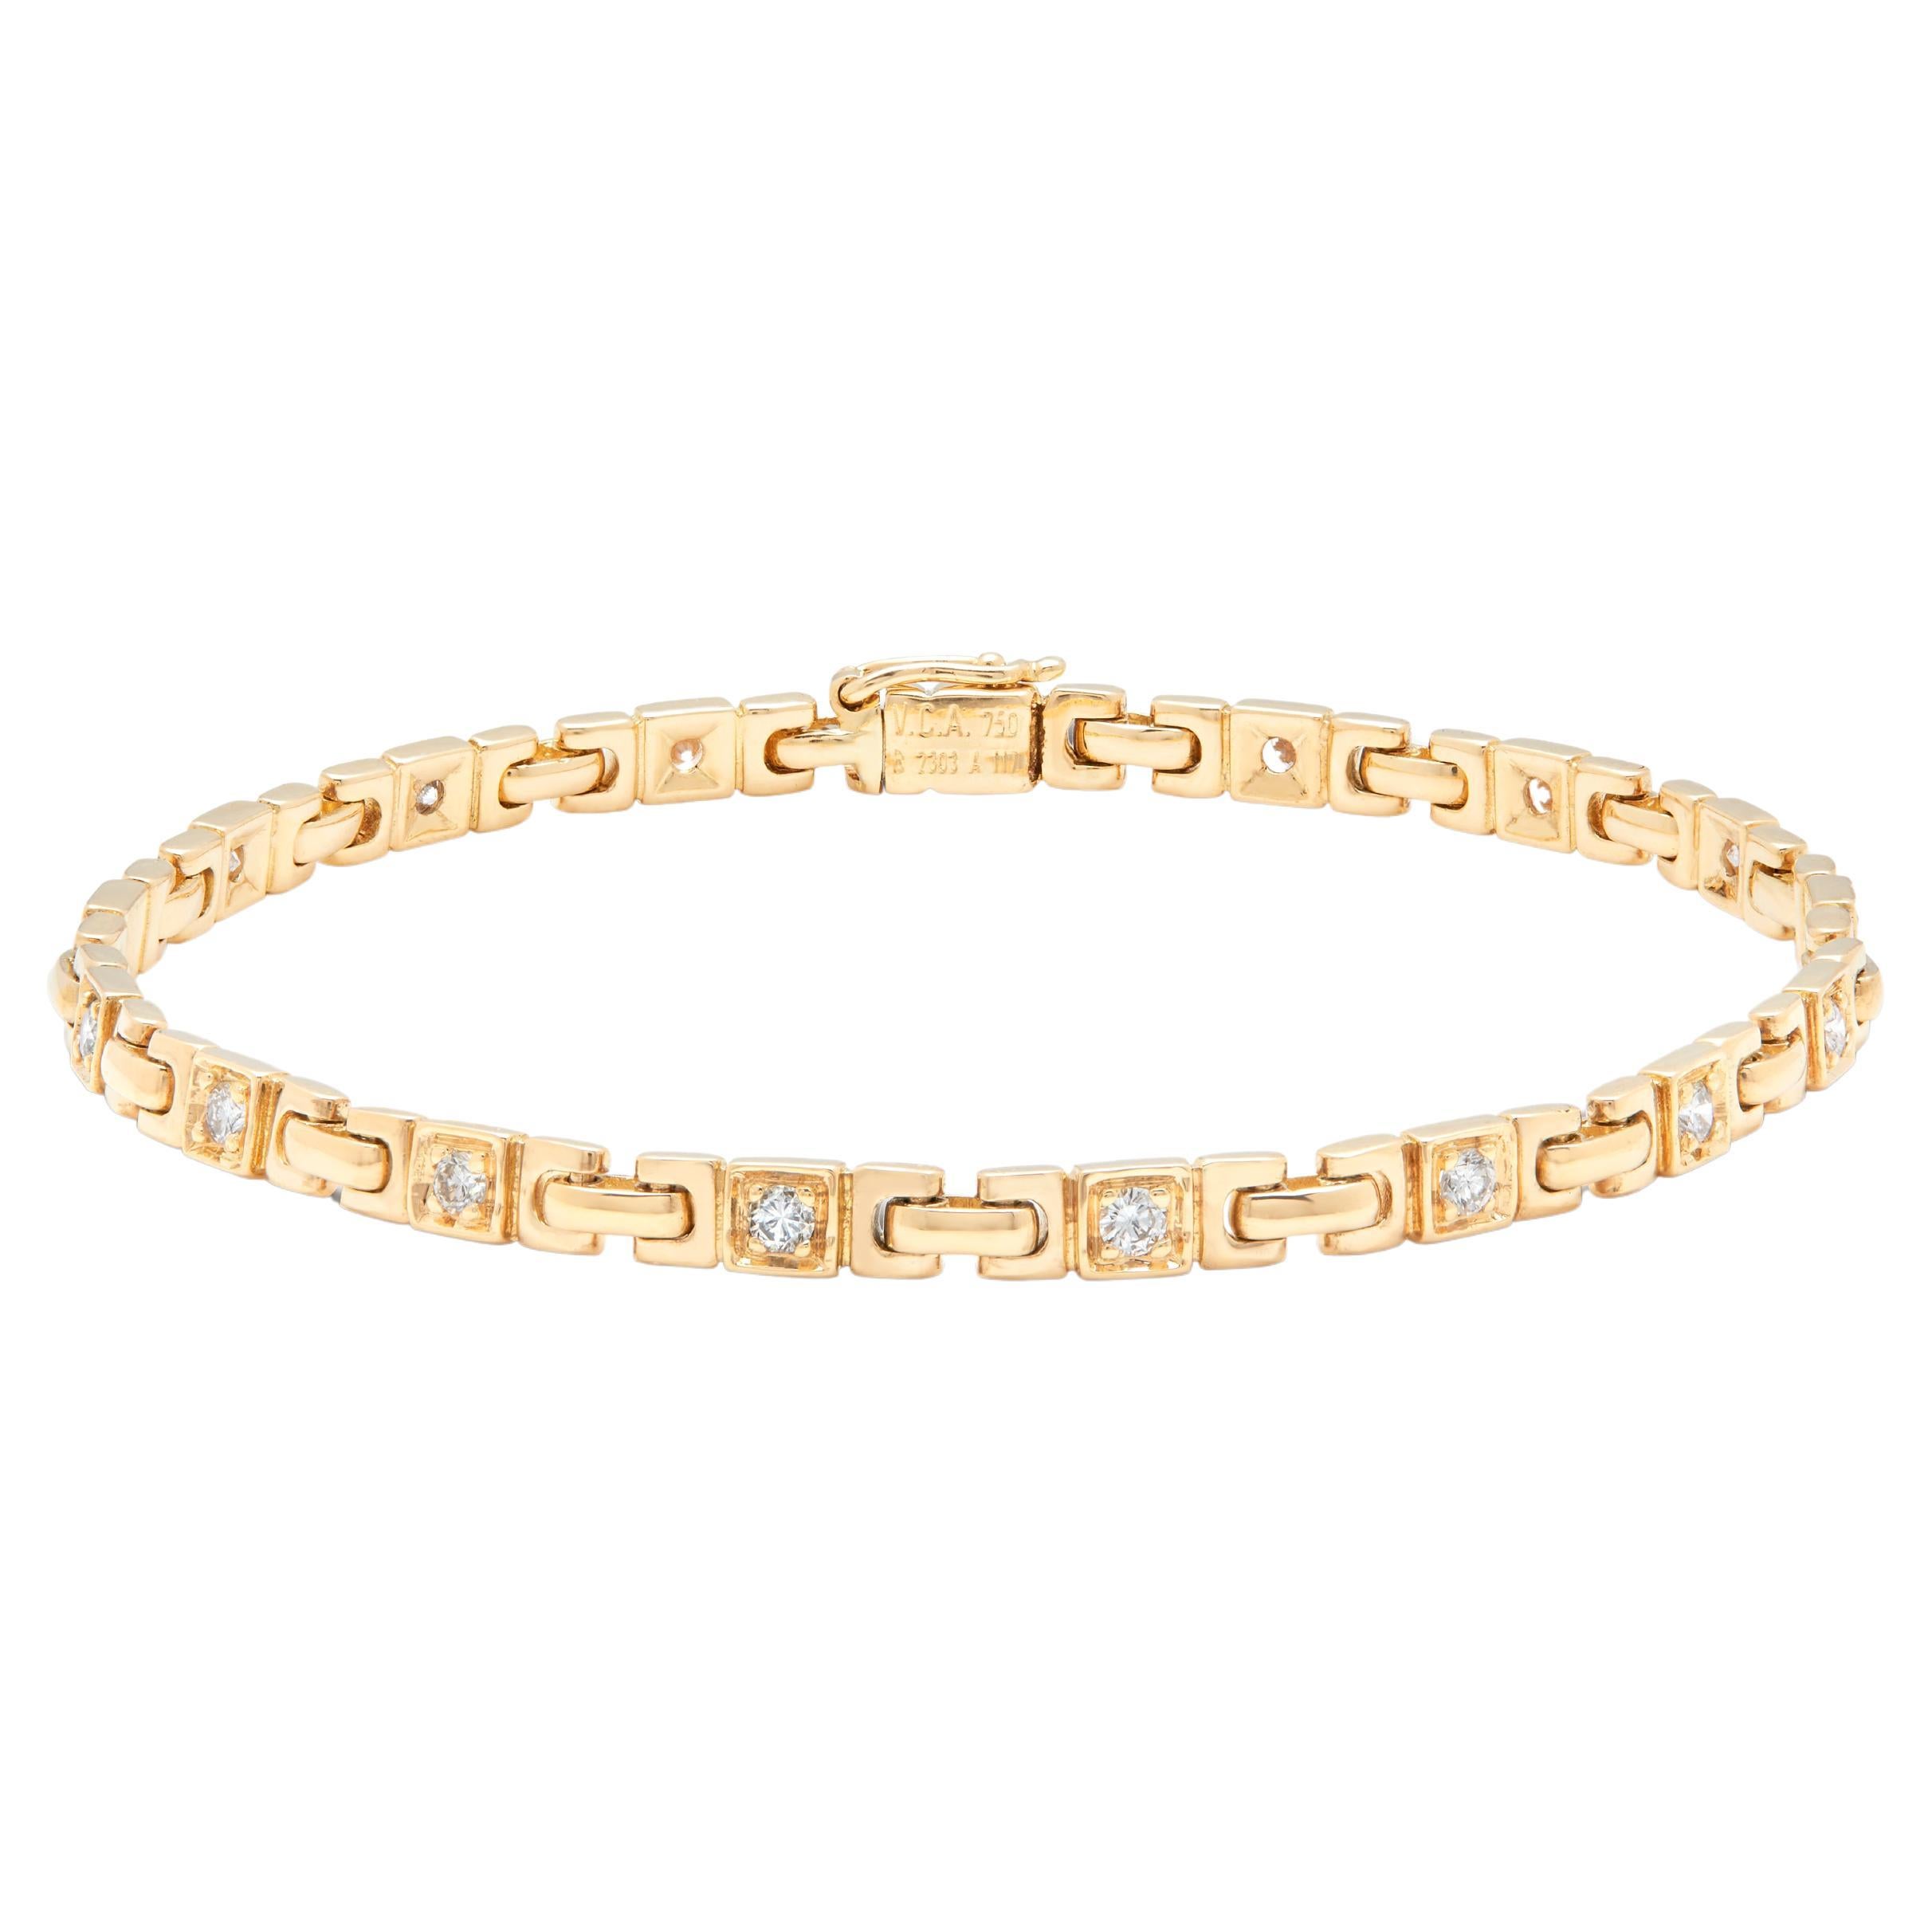 Van Cleef & Arpels, bracelet en or jaune et diamants  vers les années 1980